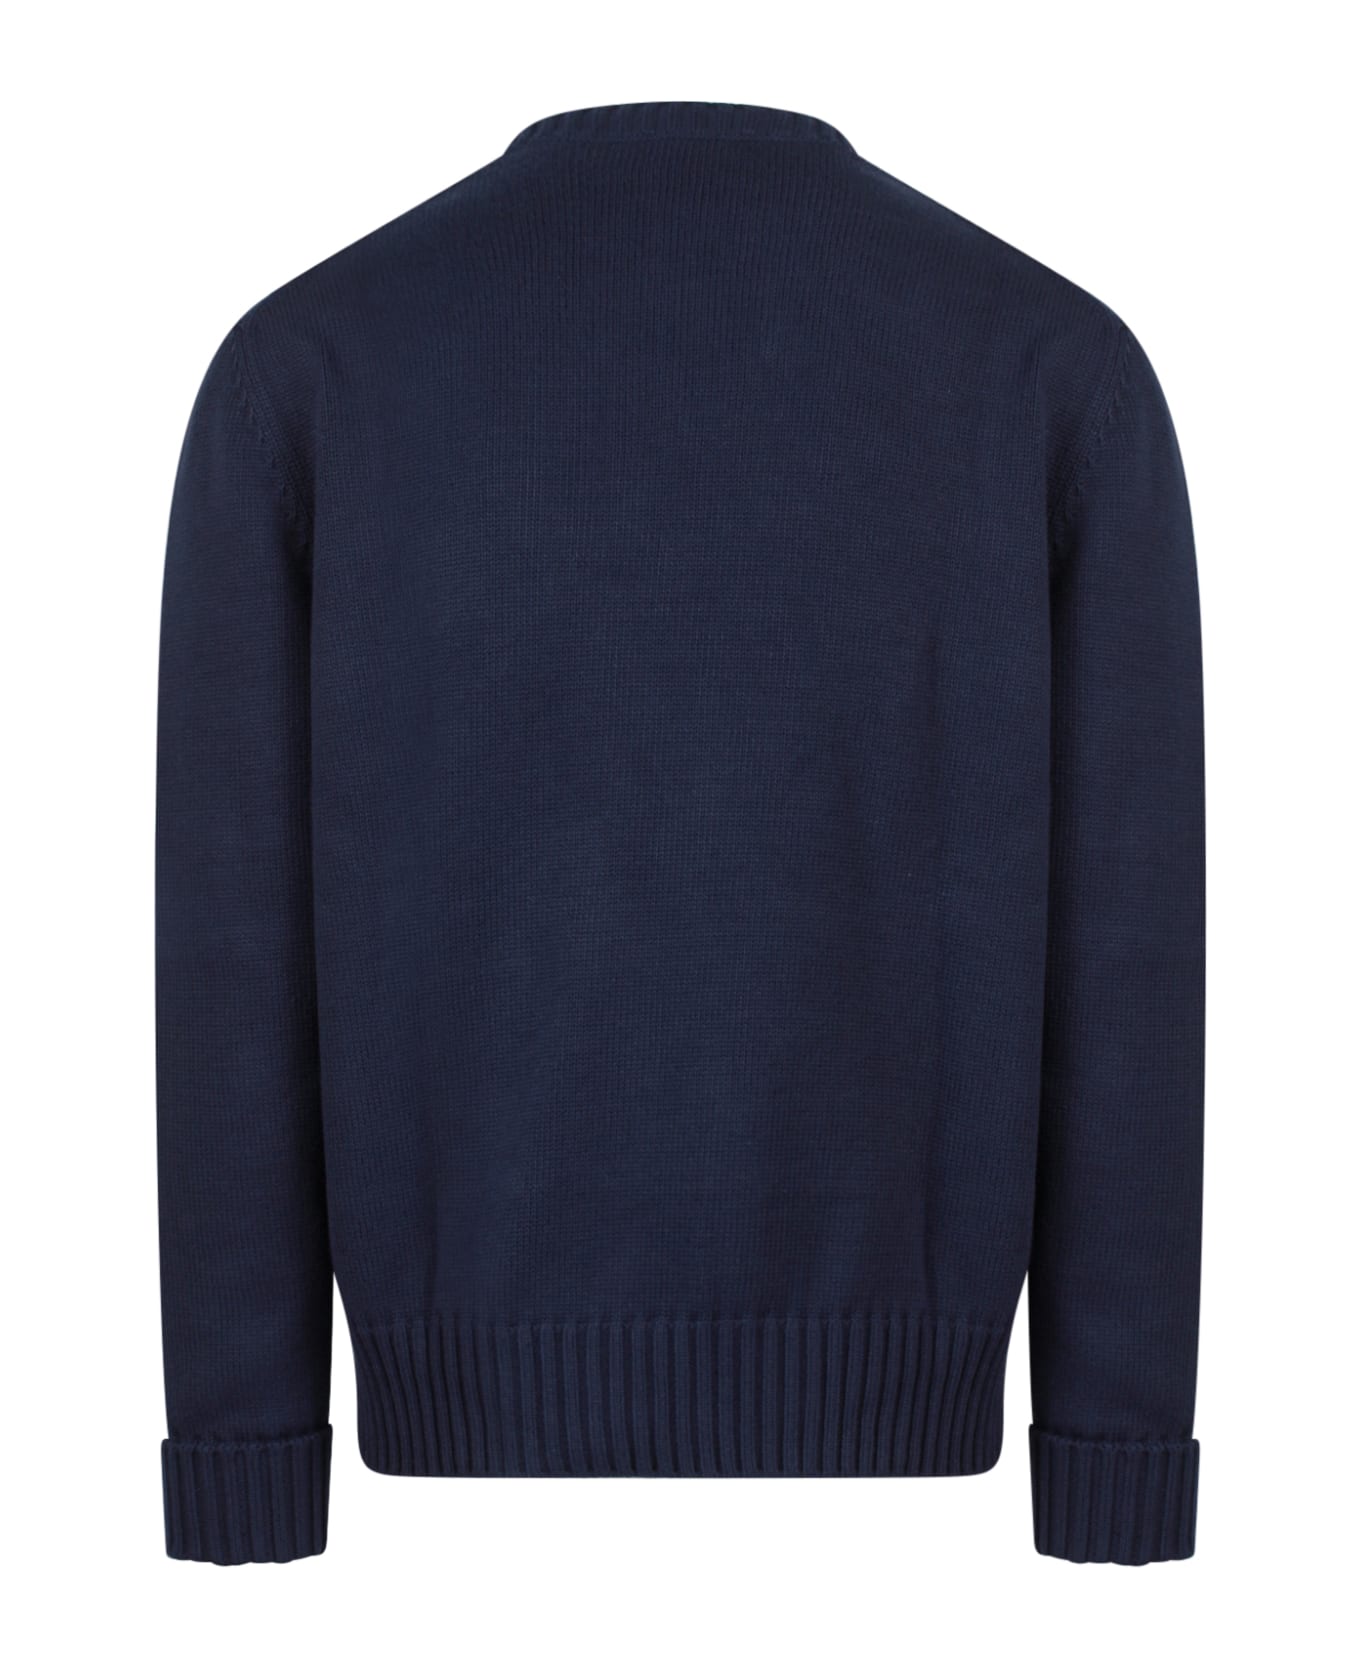 Alexander McQueen Sweater - Blue